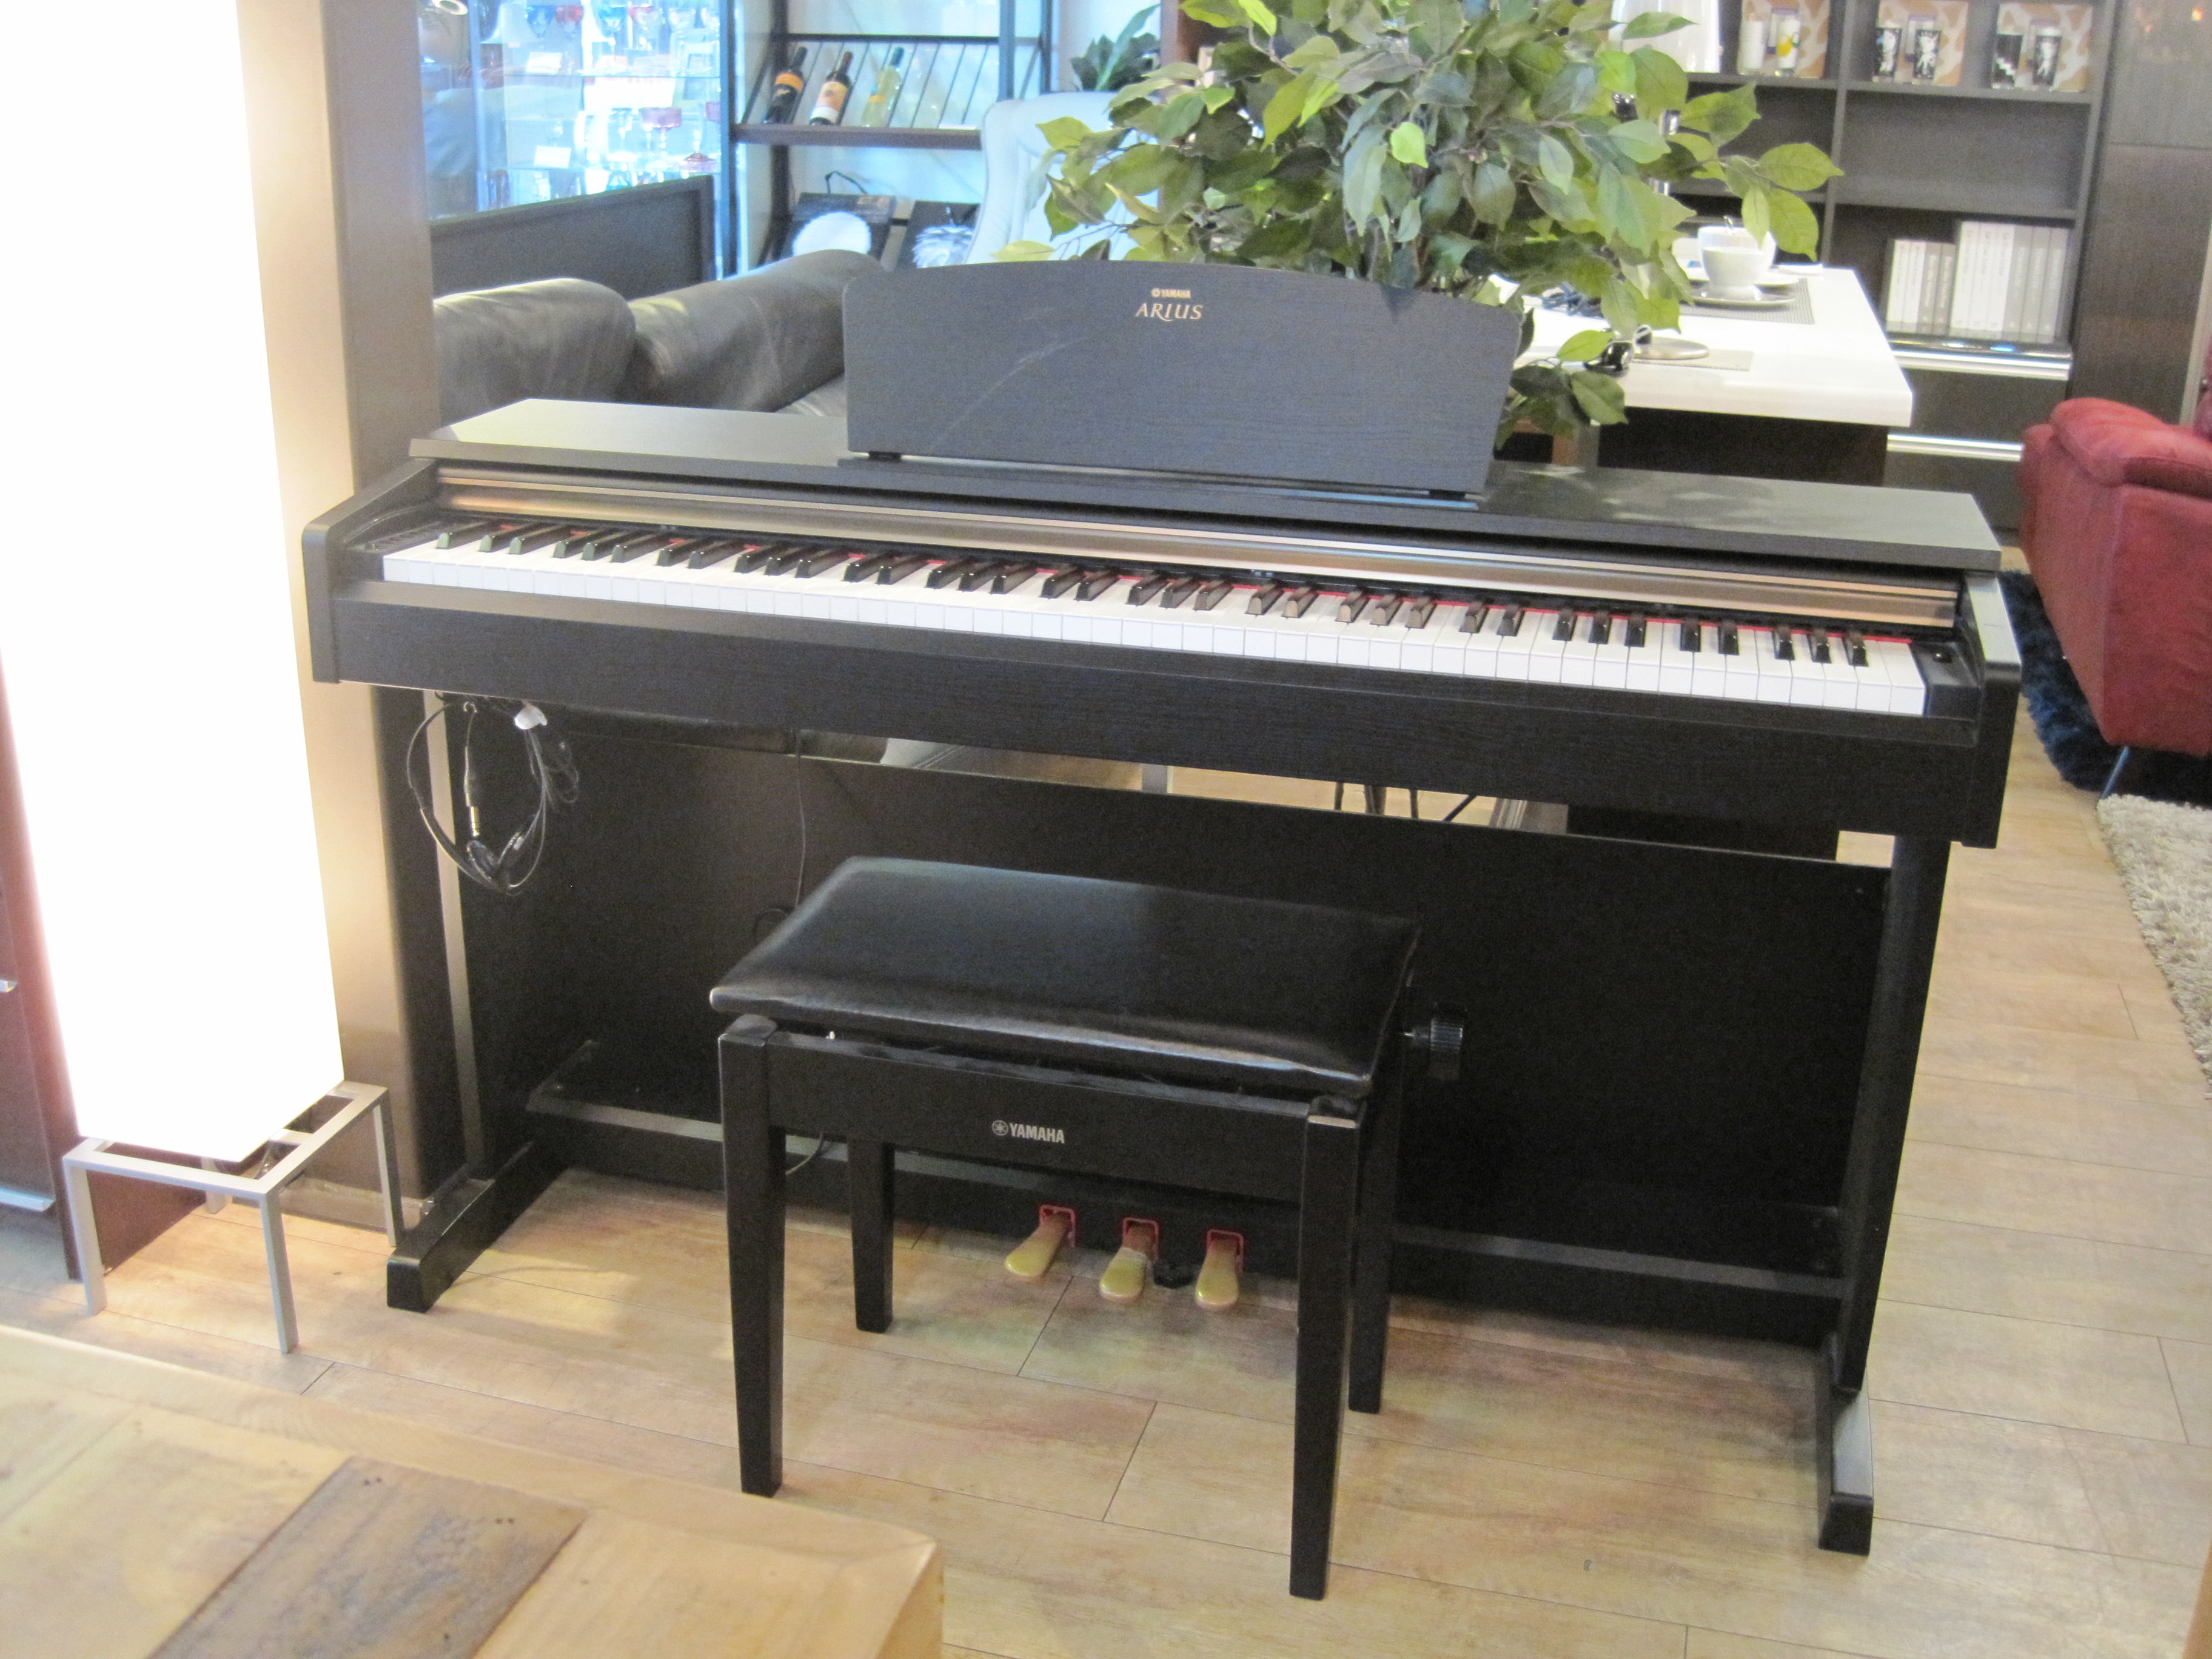 YAMAHA(ヤマハ) 電子ピアノ[YDP-161] ARIUS(アリウス) 楽器 買取しました。 | 愛知と岐阜のリサイクルショップ 再良市場